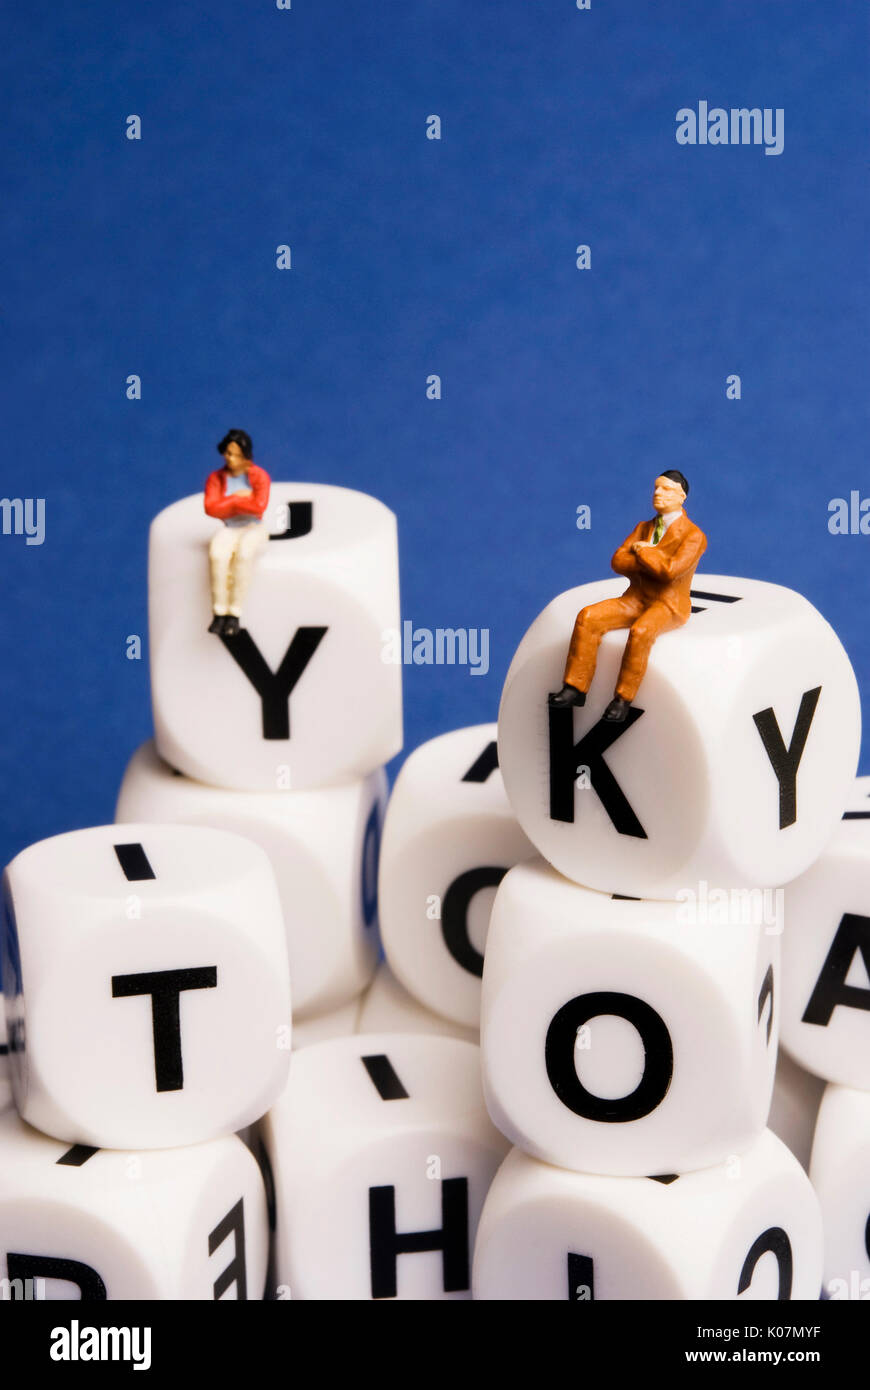 Statuine in miniatura seduta sul dado con lettere dell'alfabeto, social media concept Foto Stock